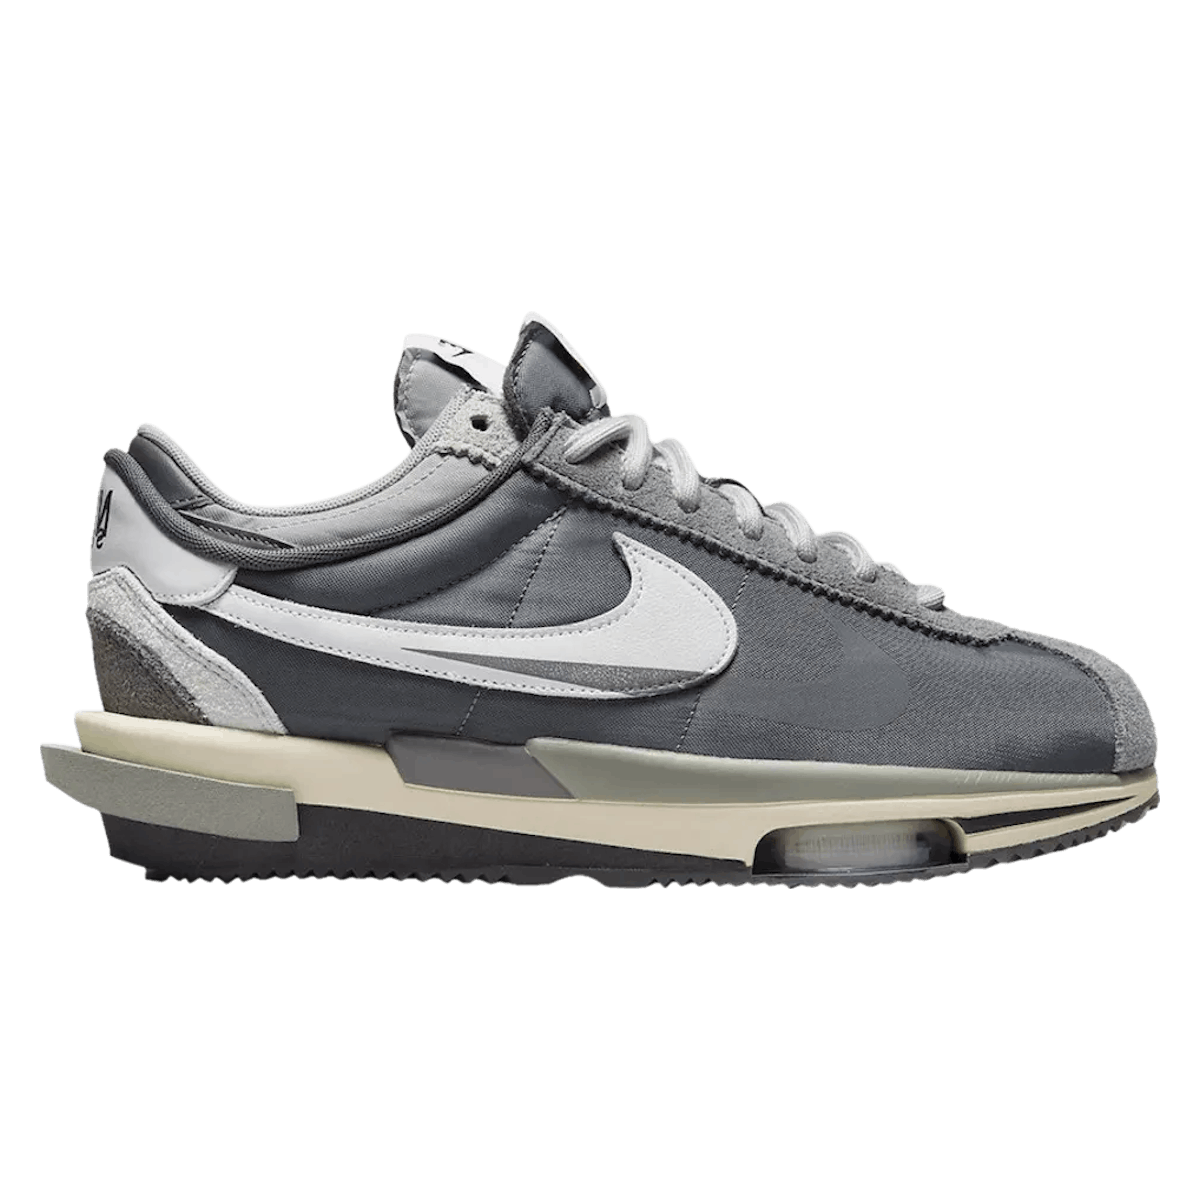 Sacai x Nike Zoom Cortez "Iron Grey"